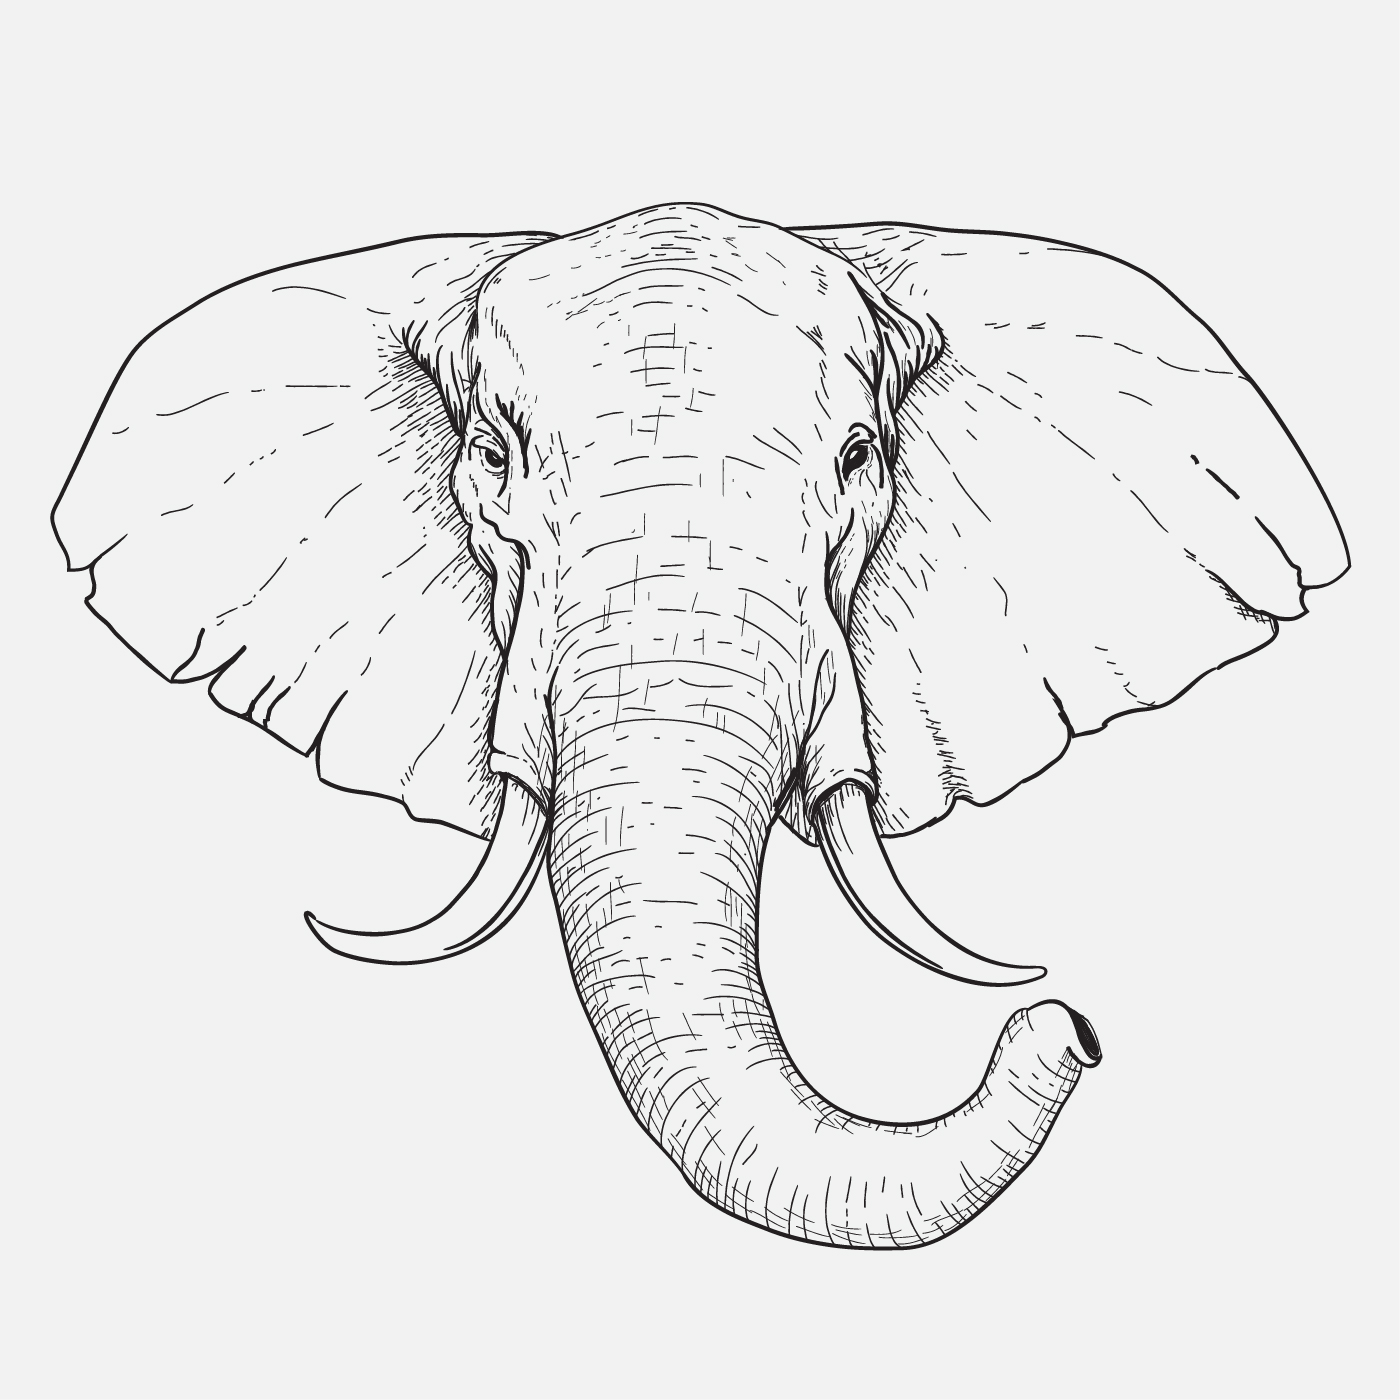 Chronisch Zielig Berg kleding op Hand getekend olifant hoofd ontwerp 686460 Vectorkunst bij Vecteezy